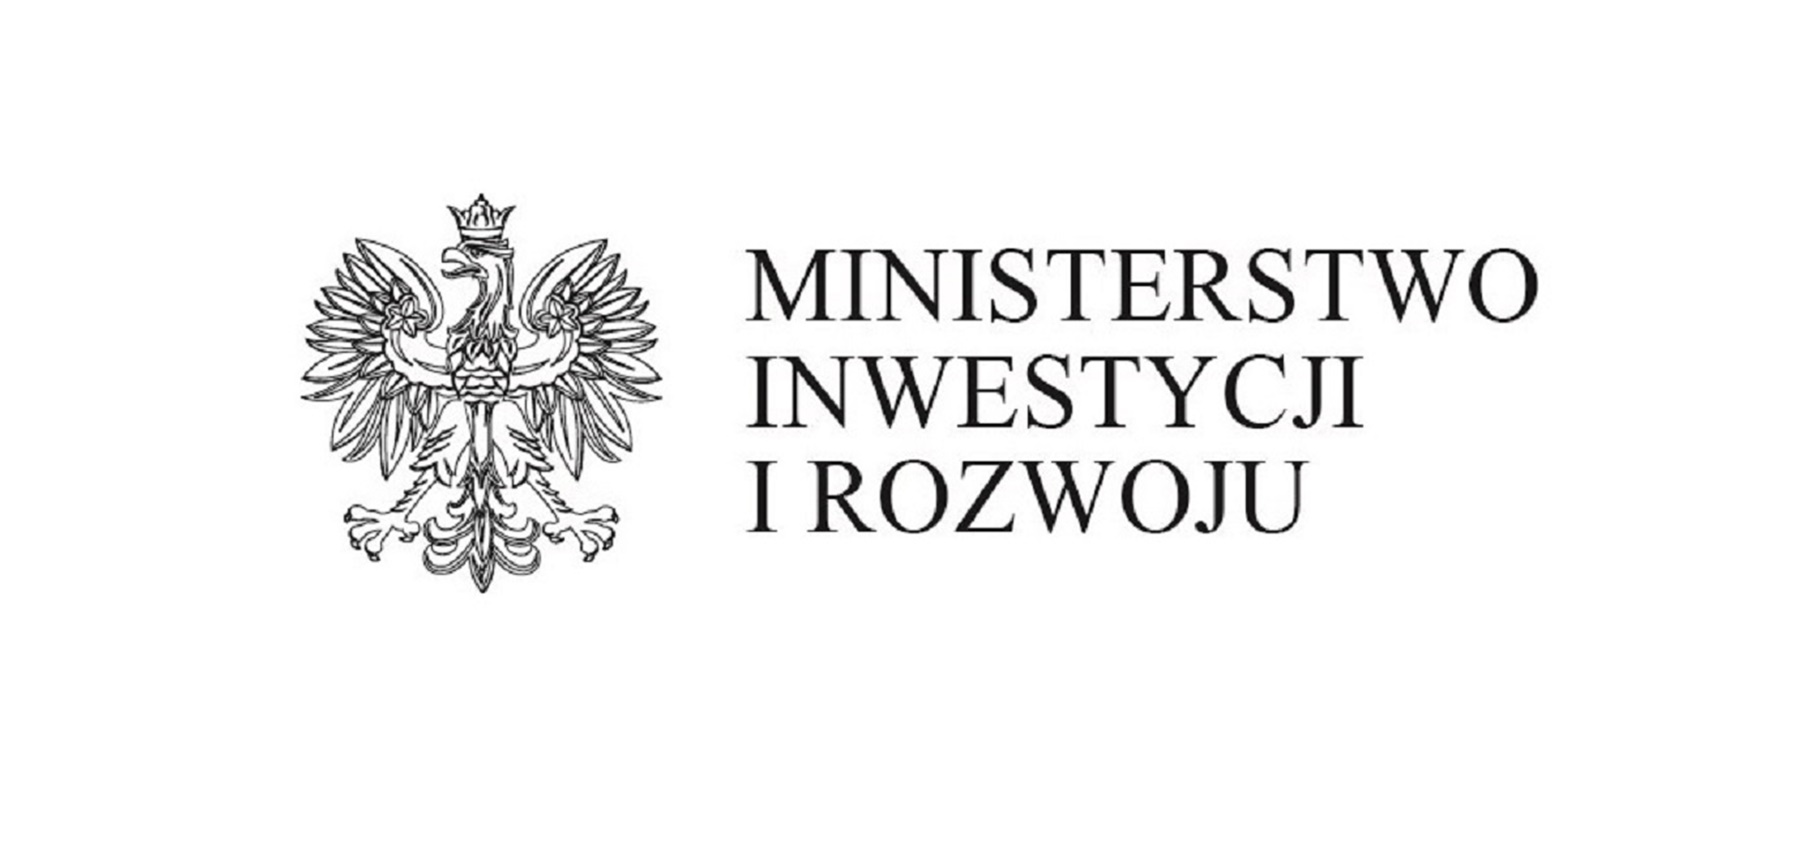 Міністерство Інвестиций і Розвитку